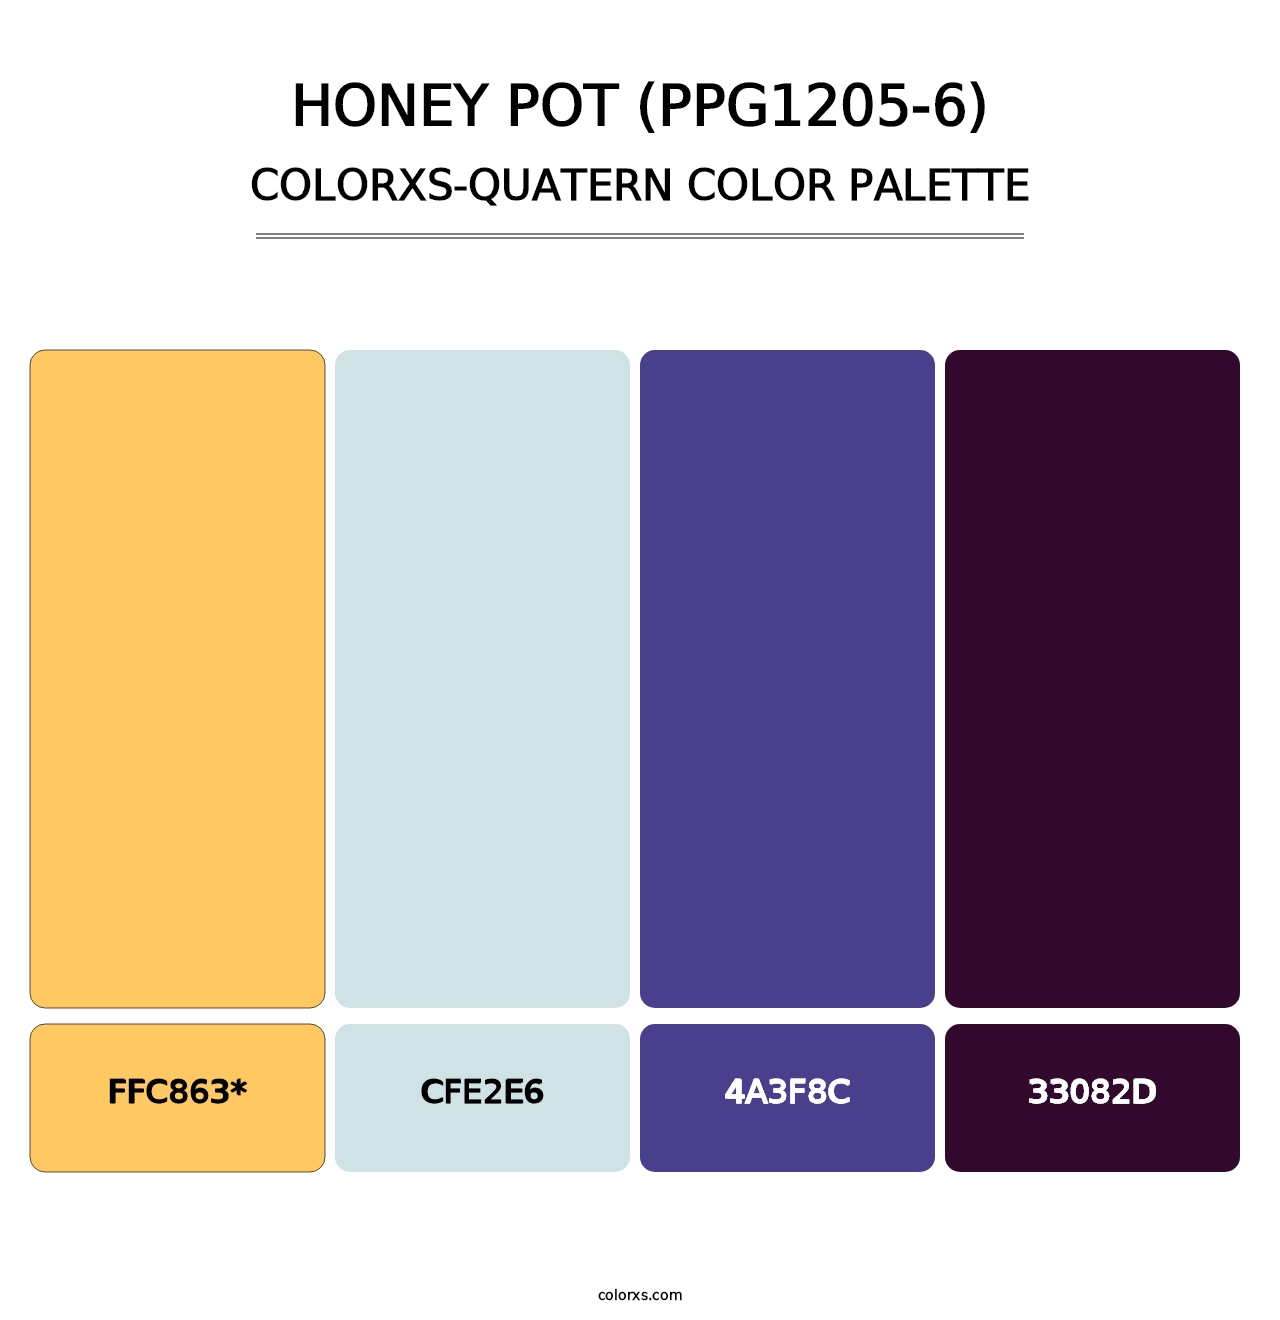 Honey Pot (PPG1205-6) - Colorxs Quatern Palette